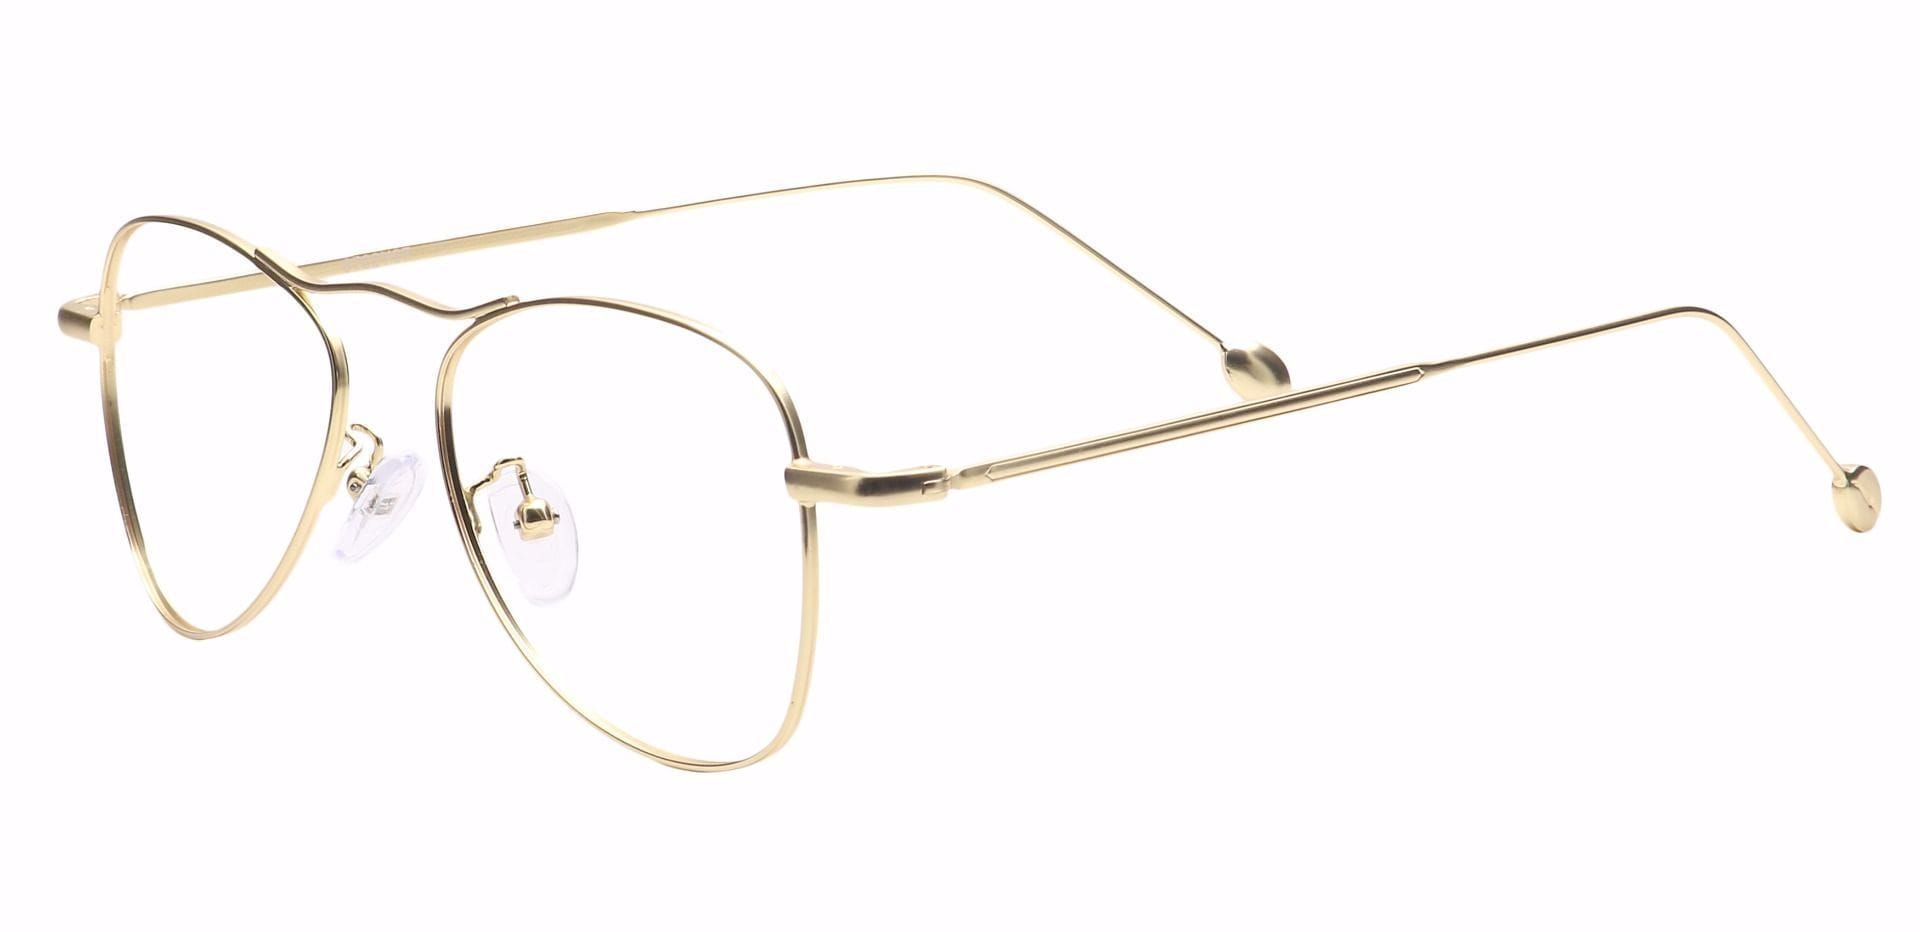 Brio Aviator Prescription Glasses - Gold